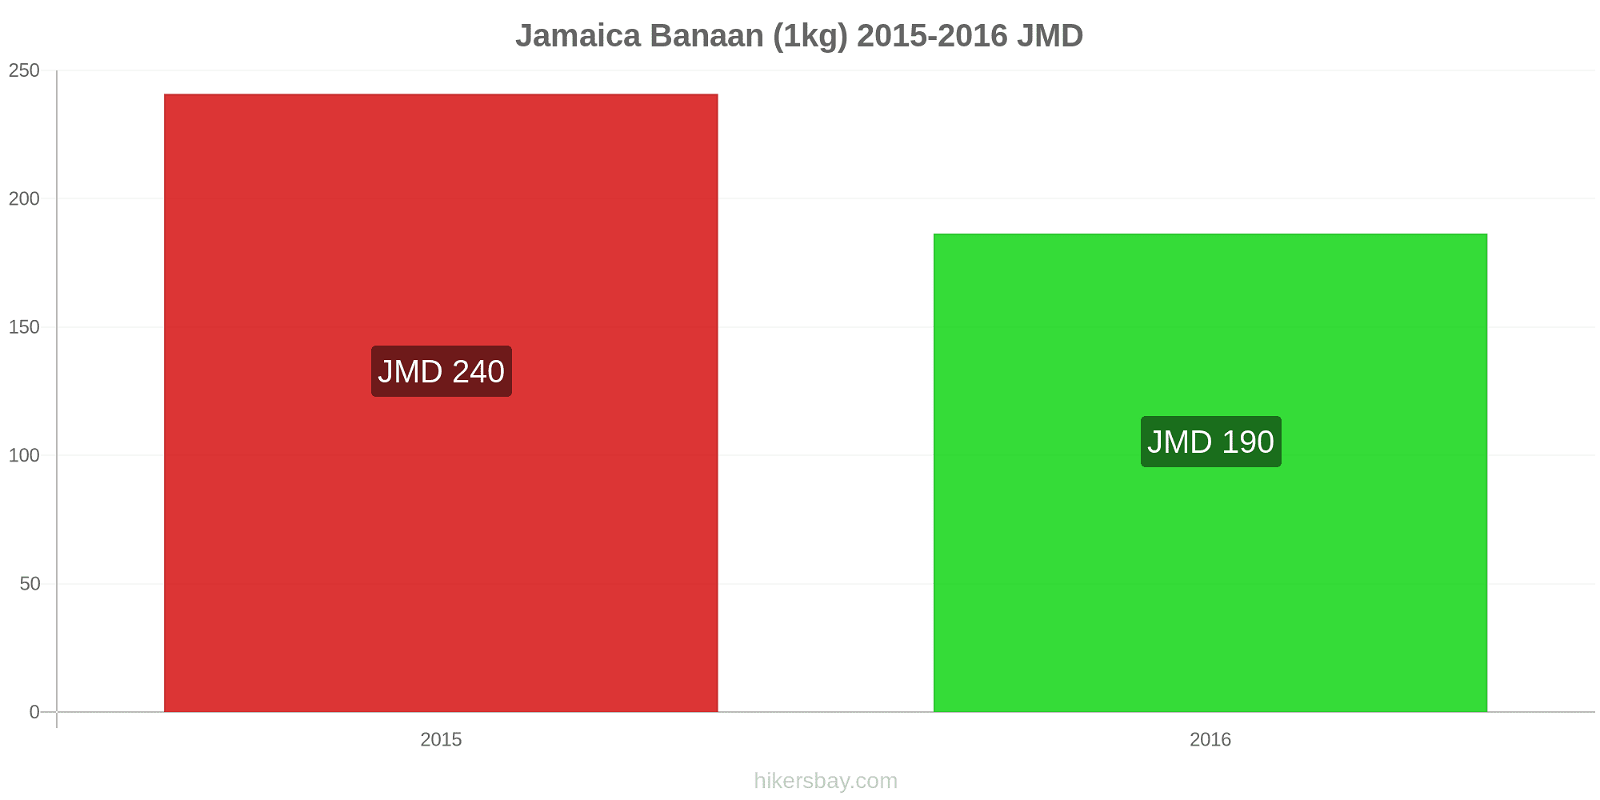 Jamaica prijswijzigingen Bananen (1kg) hikersbay.com